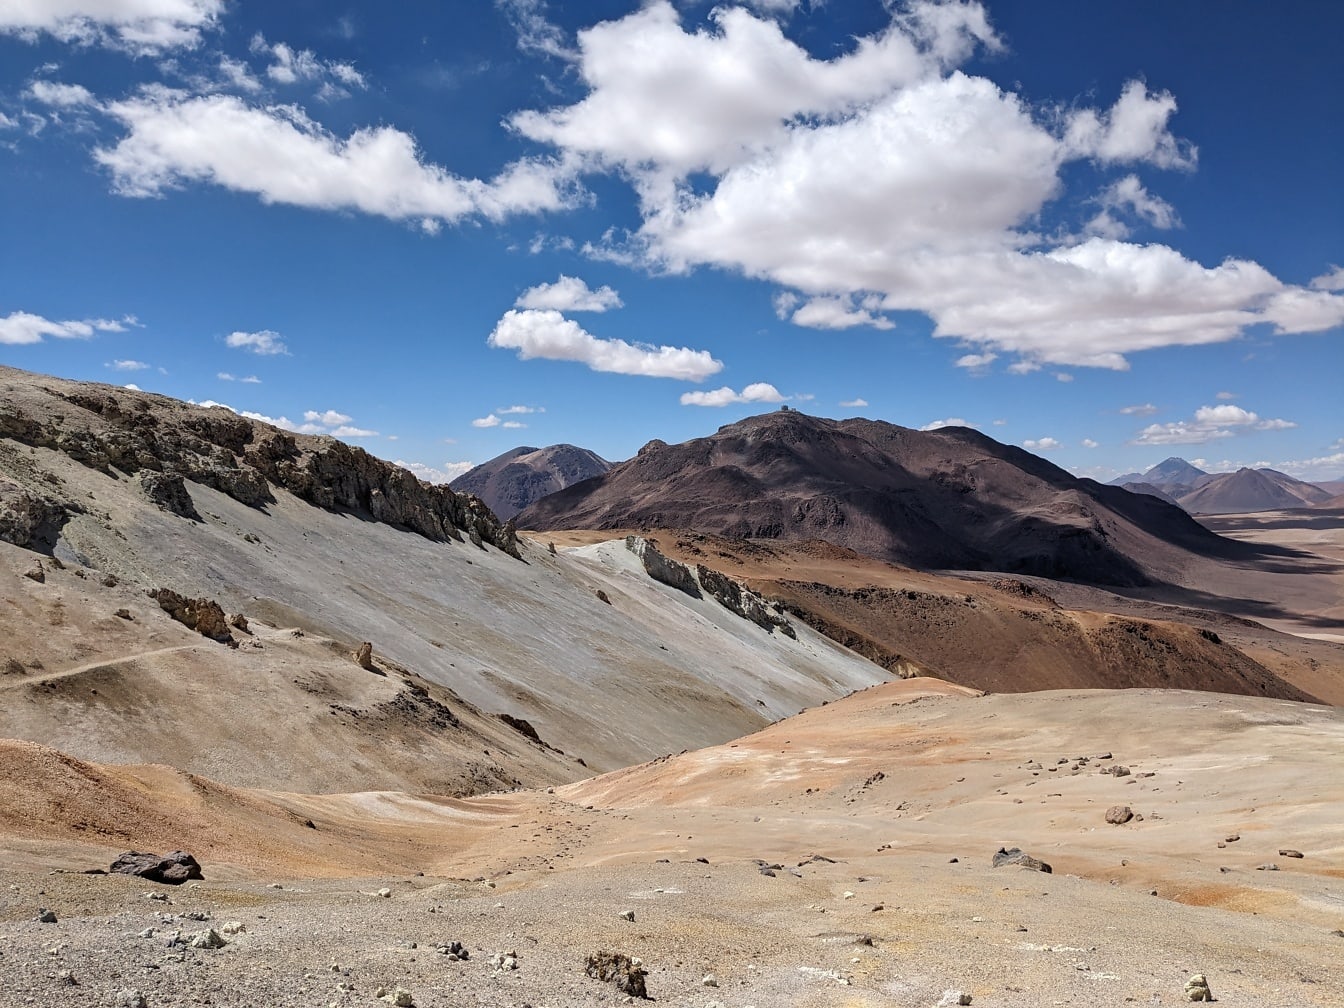 Utrolig landskap i en tørreste ørken i stor høyde på peruansk platå